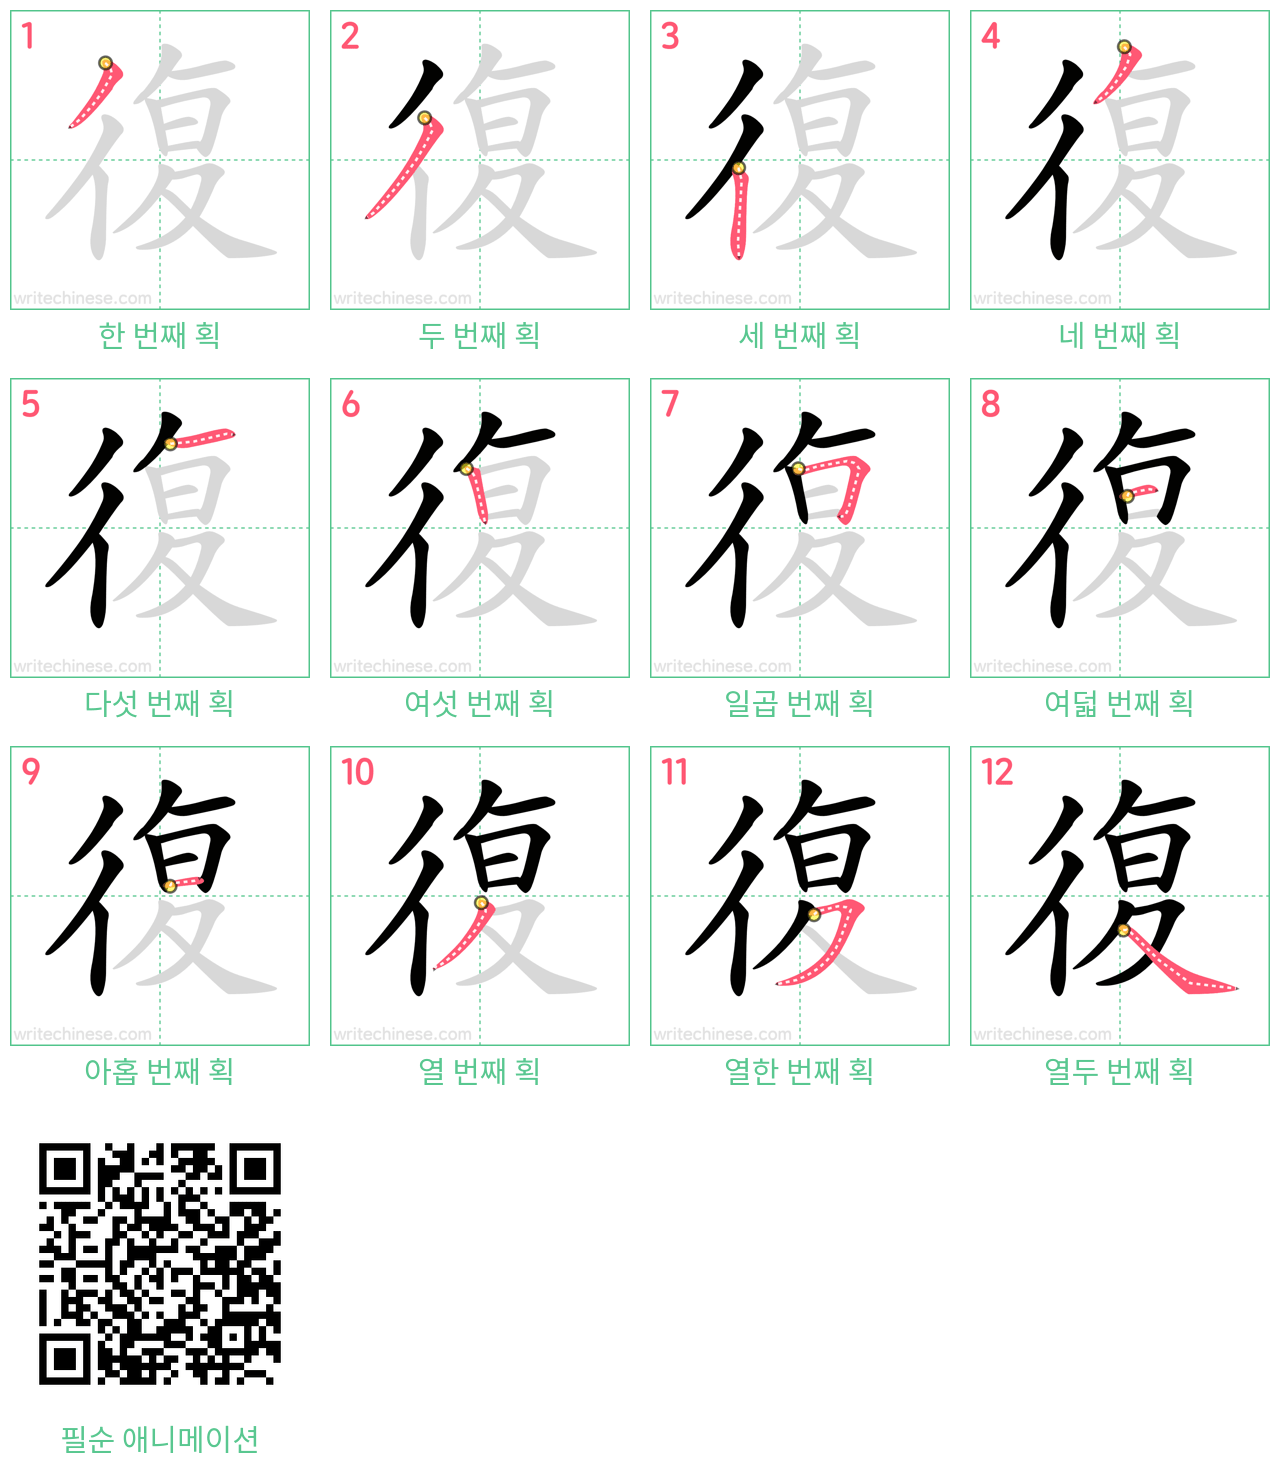 復 step-by-step stroke order diagrams